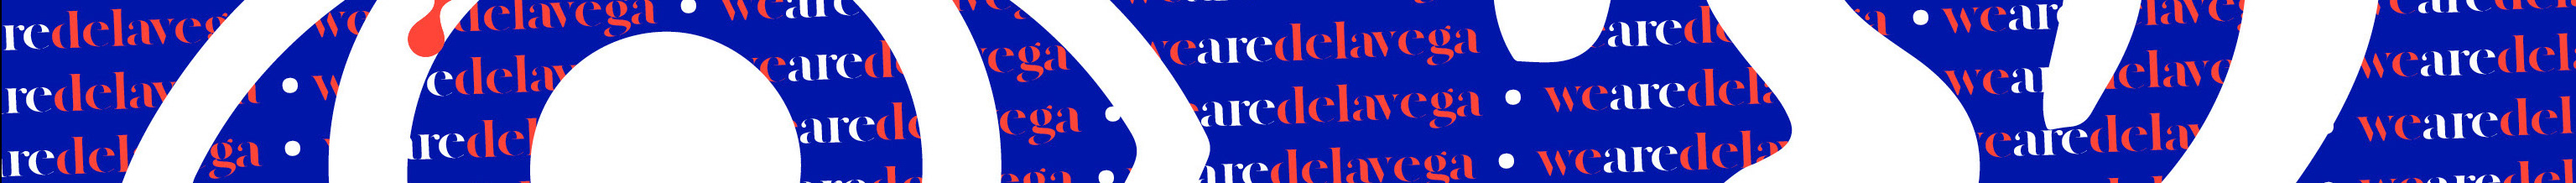 Delavega Création's profile banner